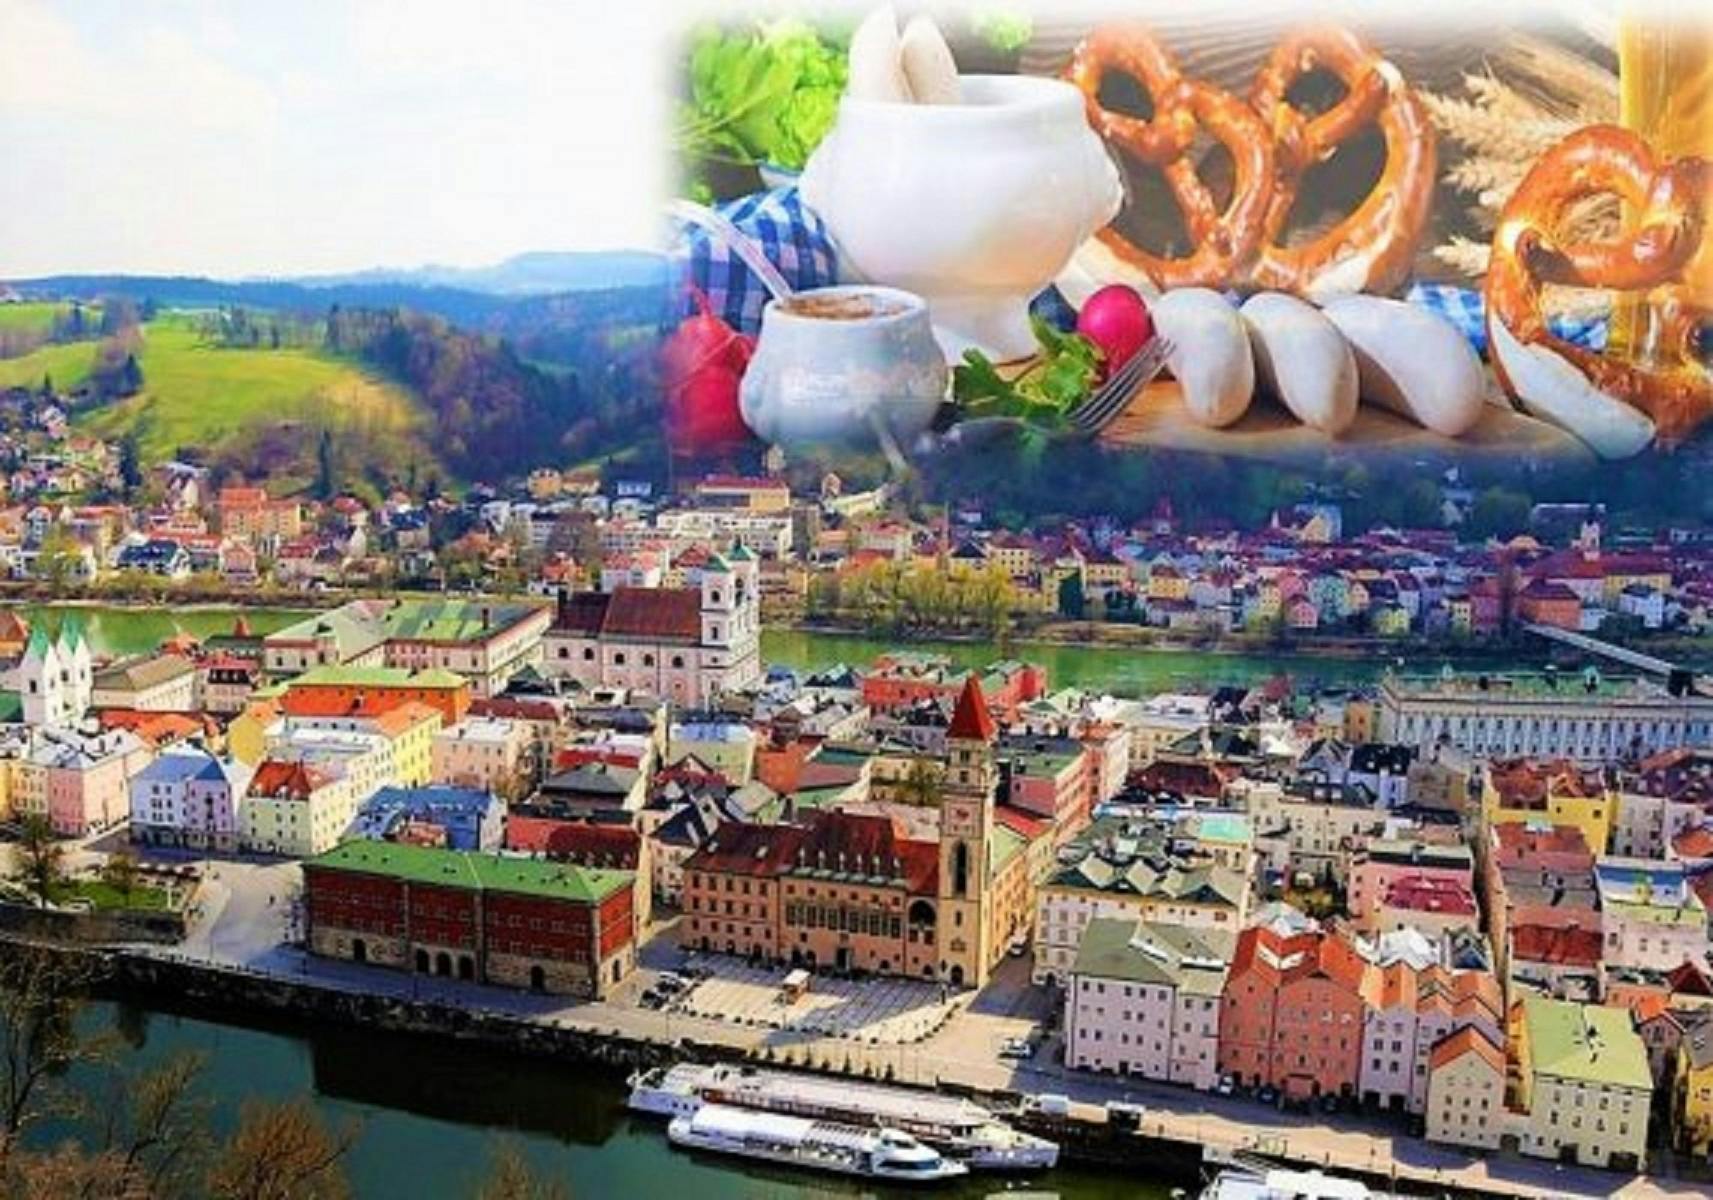 Erlebnisrallye in Passau „ein veganer Krimi“